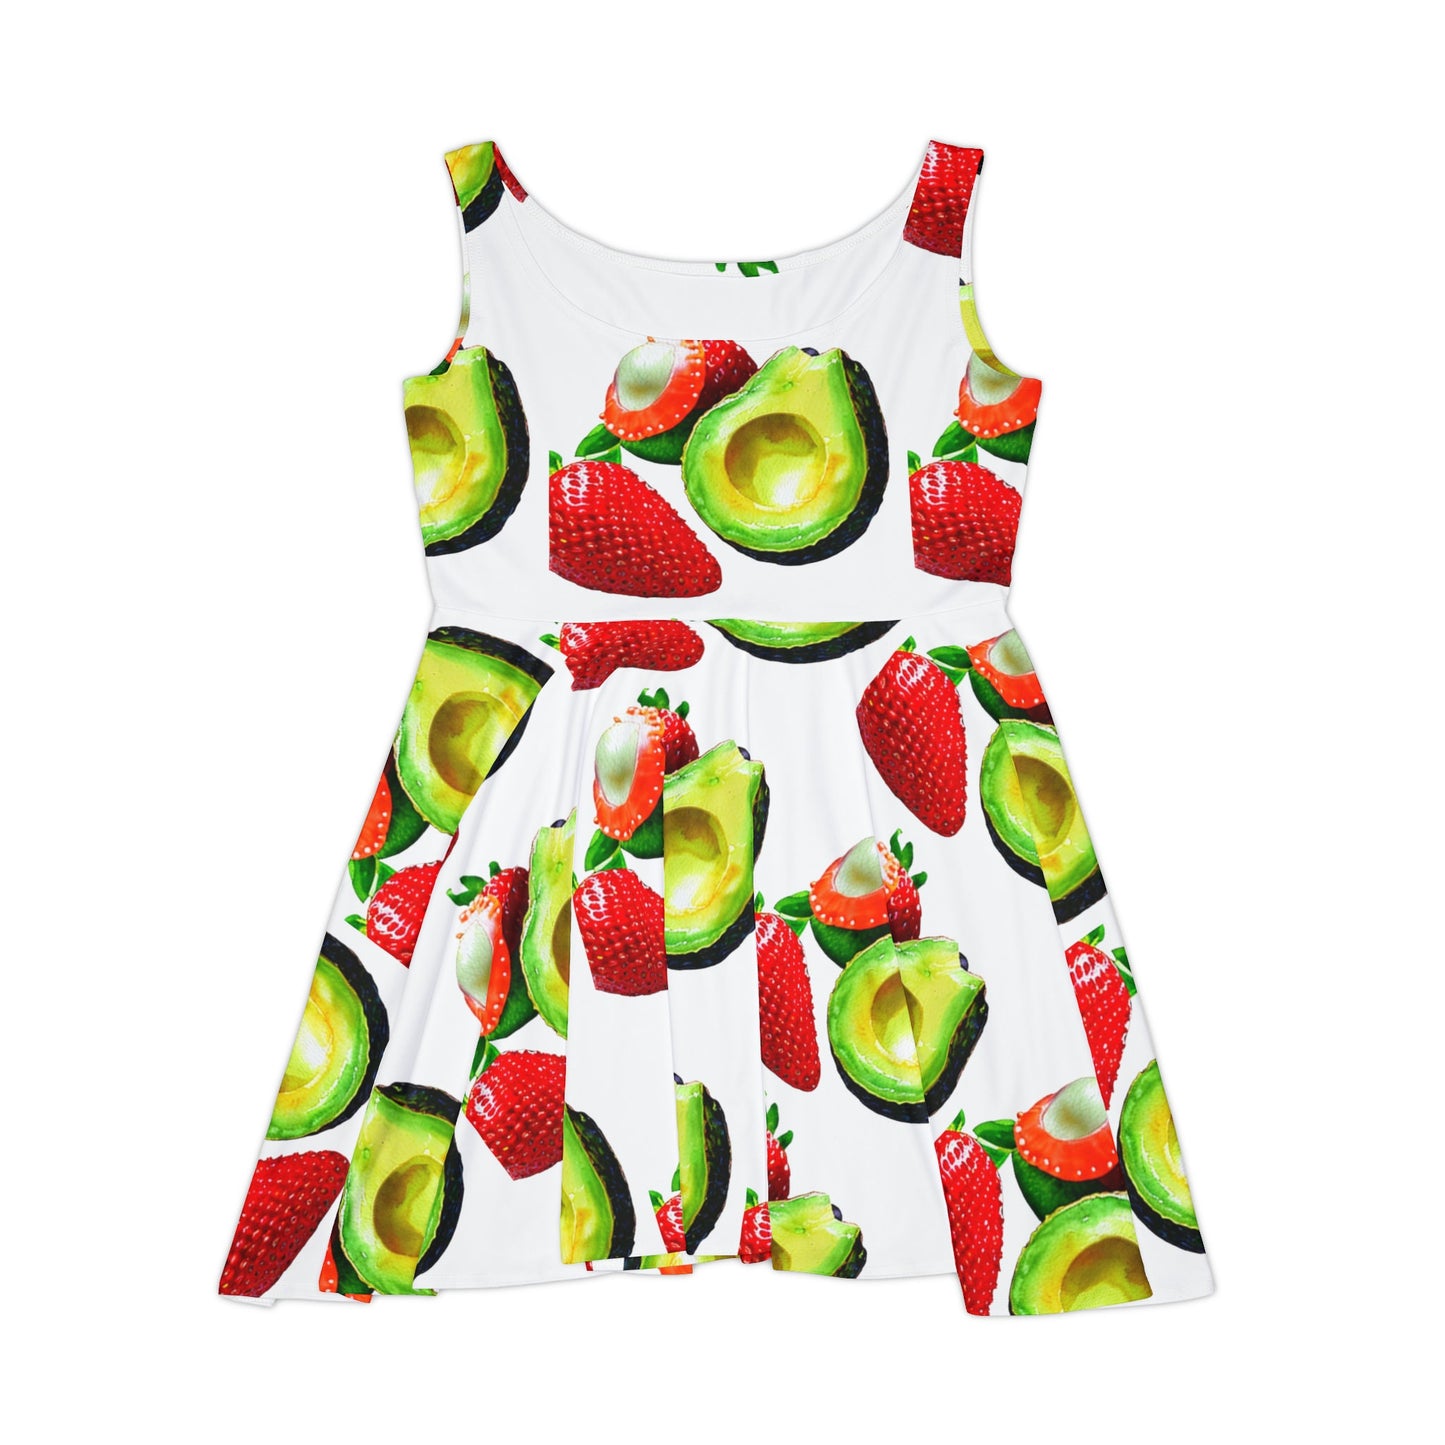 Avocado and Strawberry Women's Skater Dress (AOP)